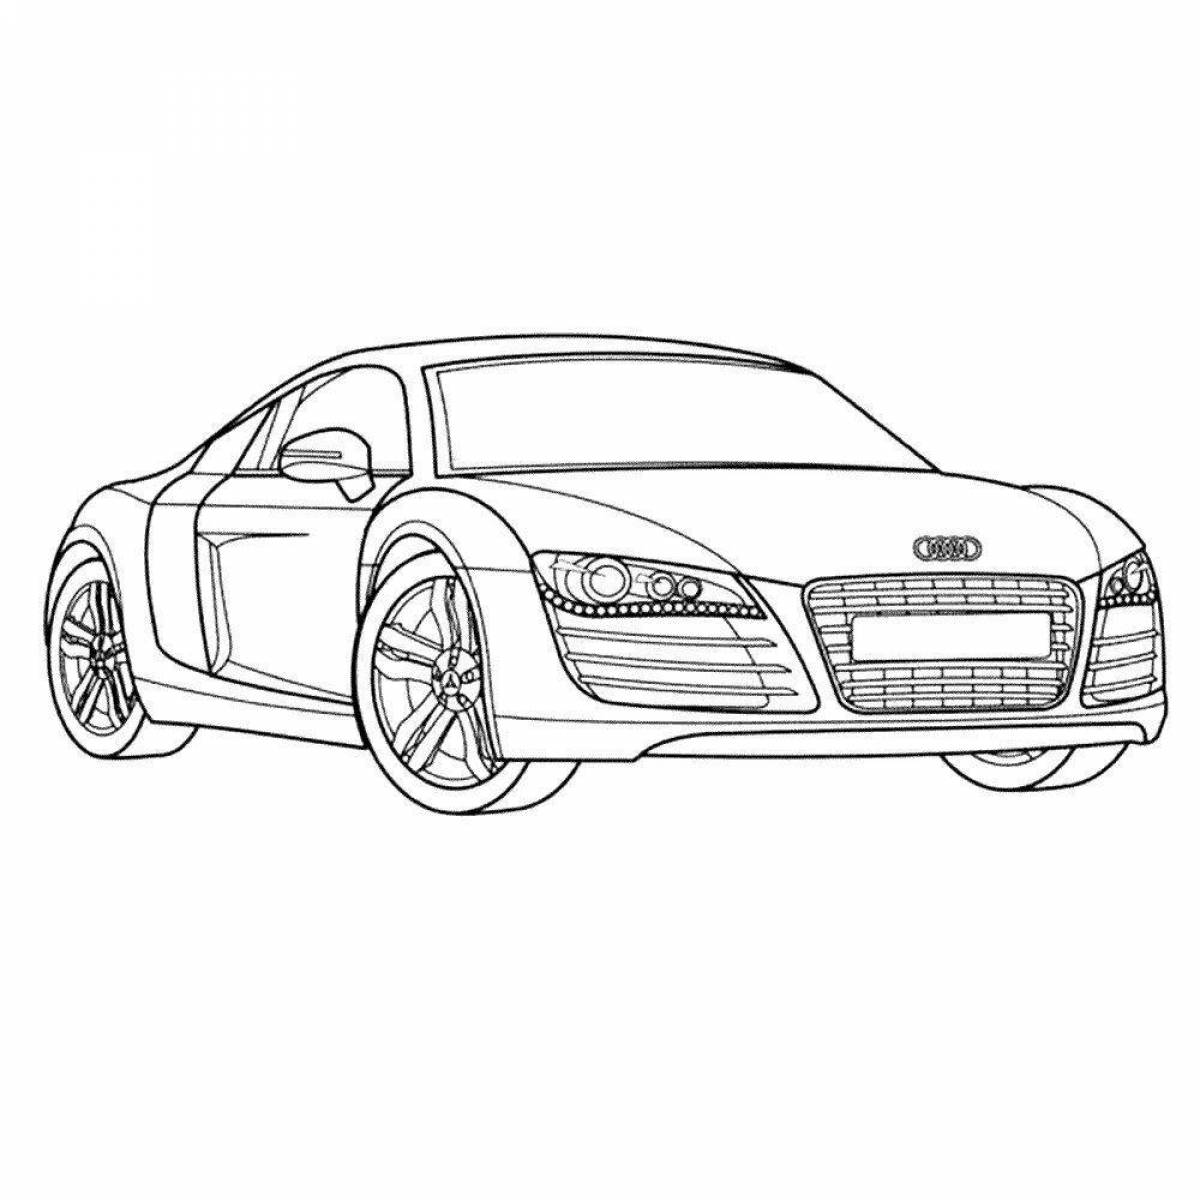 Машина Audi r8 раскраска